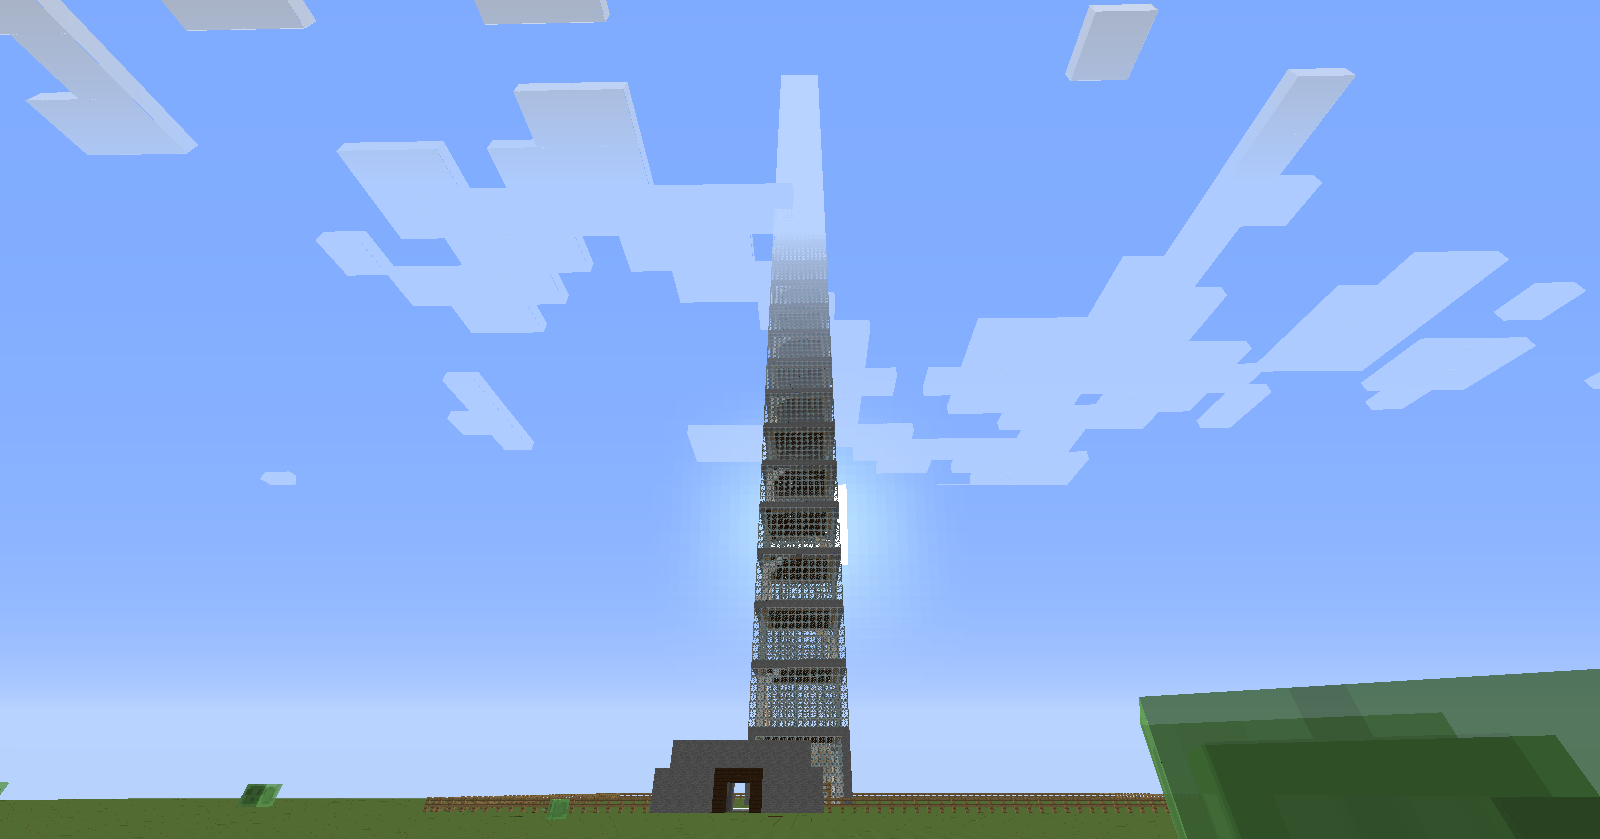 Höchstes Minecraft Gebäude? (Tower, Wolkenkratzer)